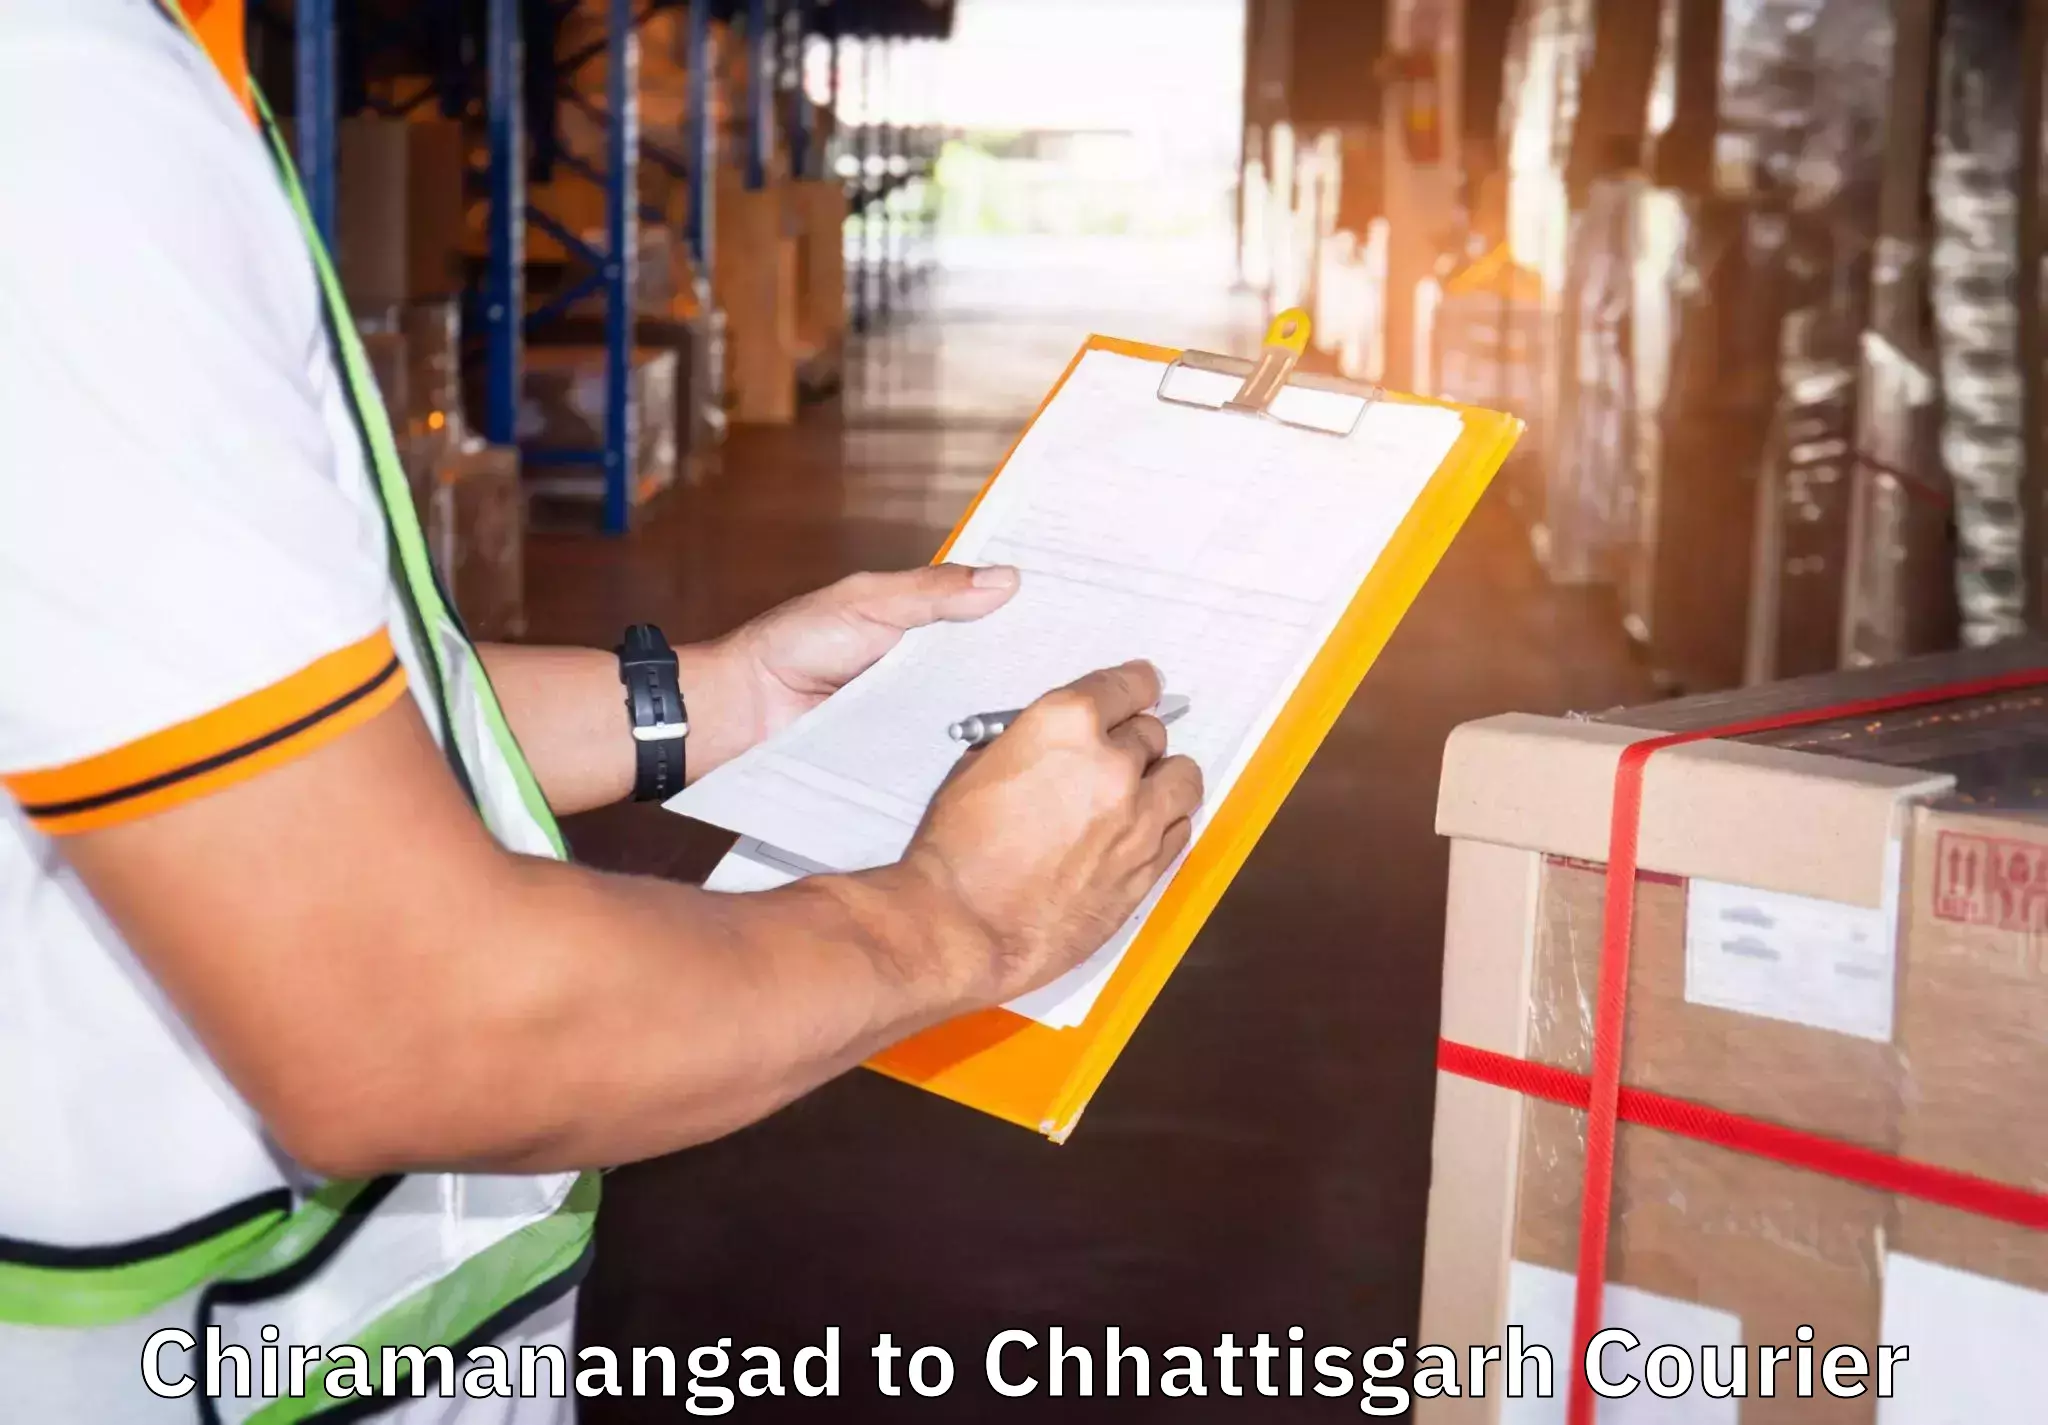 Moving and packing experts Chiramanangad to Saraipali